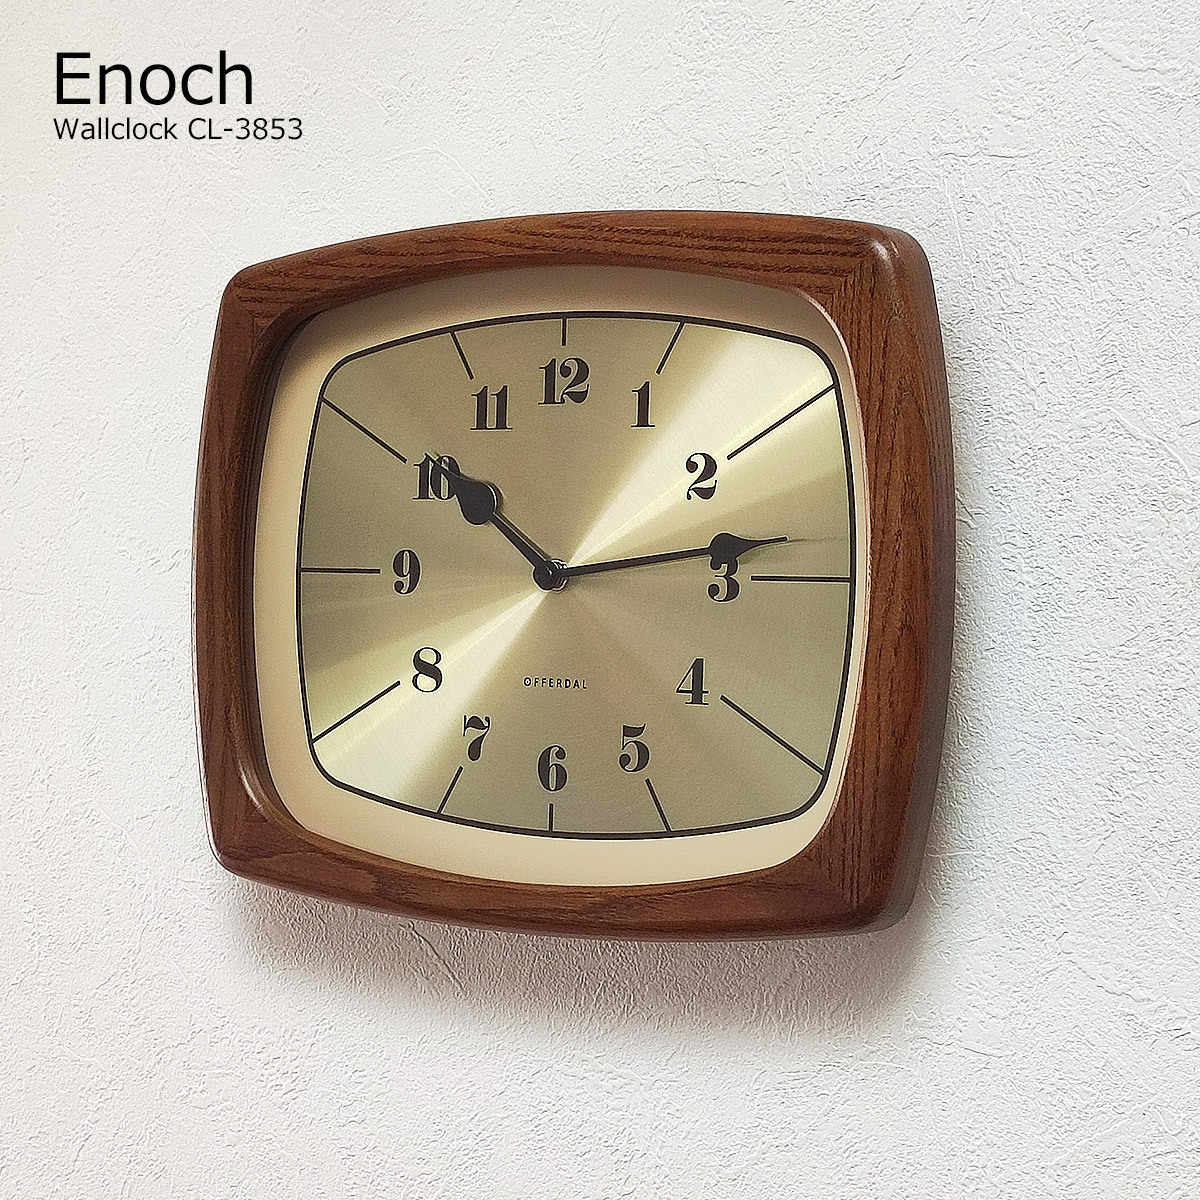 壁掛け時計 おしゃれ 時計 壁掛け 北欧 掛け時計 イーノク Enoch CL 